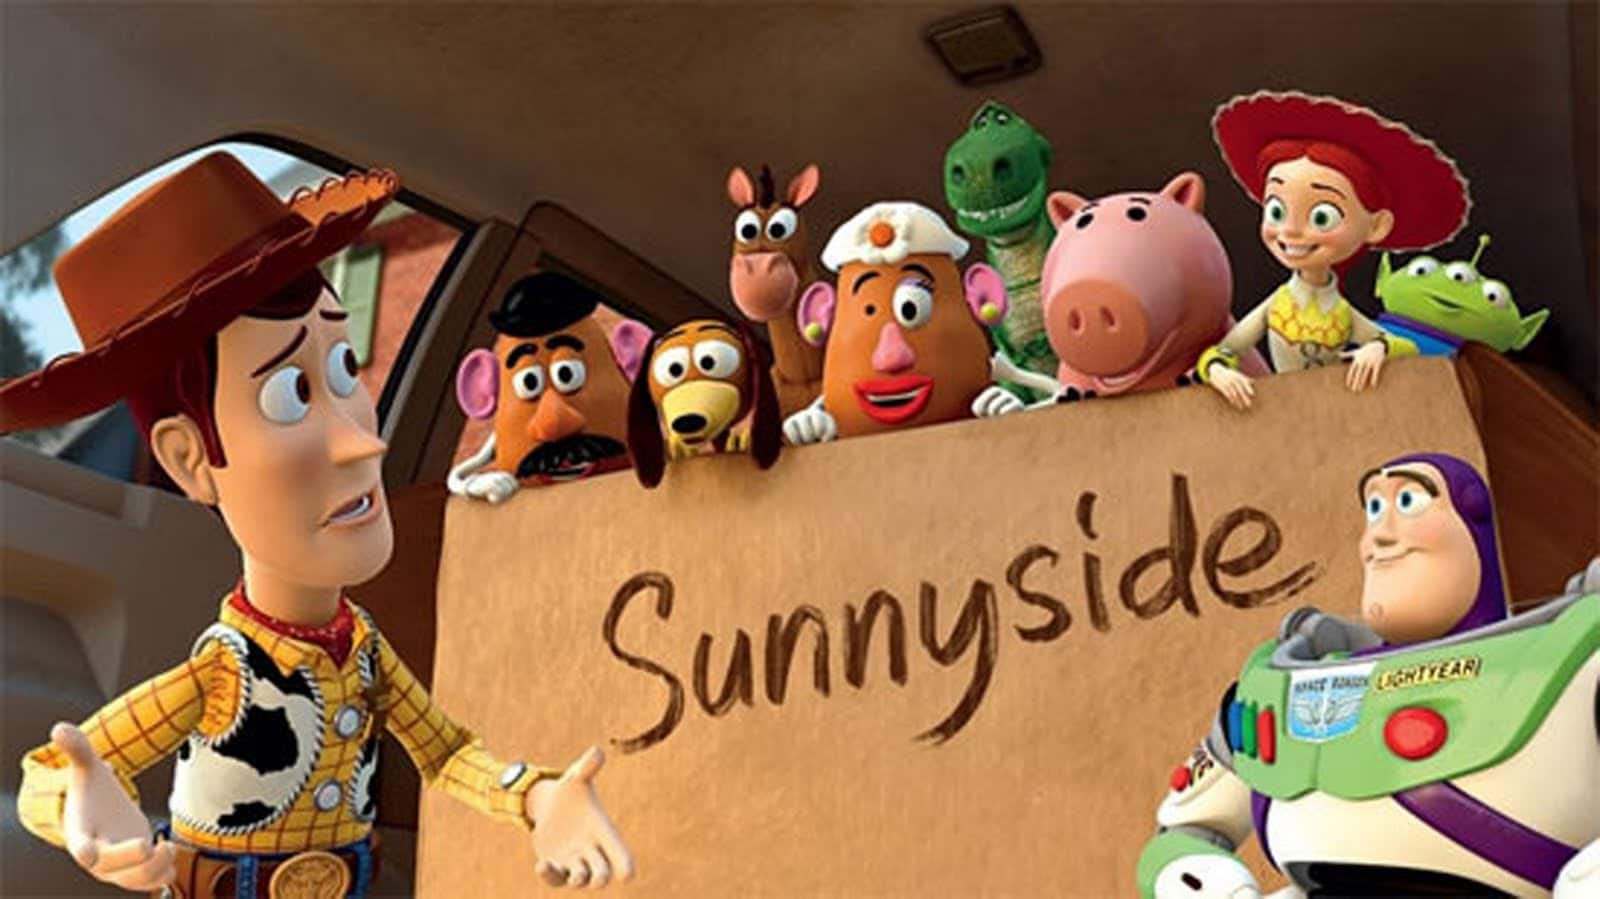 Toy Story 3 Sunnyside